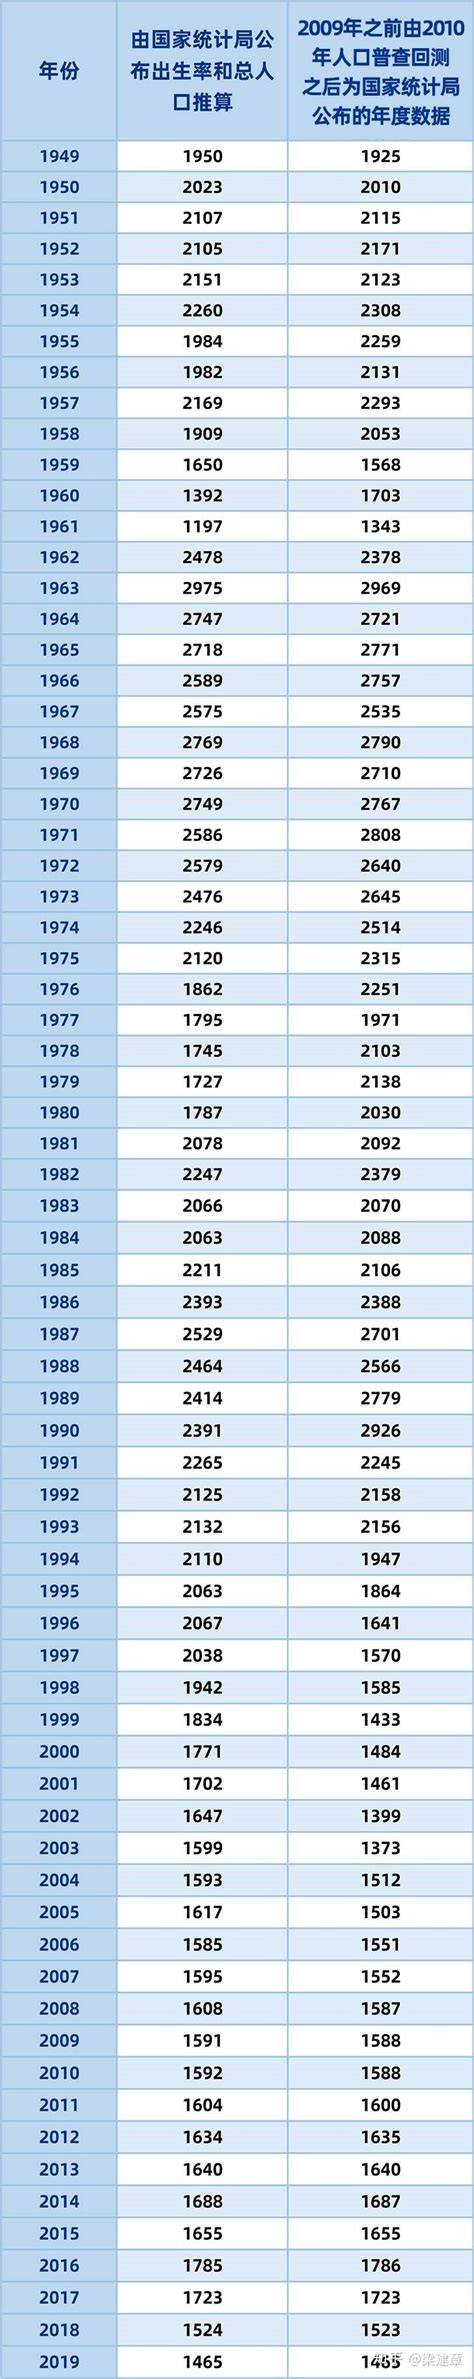 梁建章：中国历年出生人口（1949-2019）——不应传播错误的数据 - 知乎